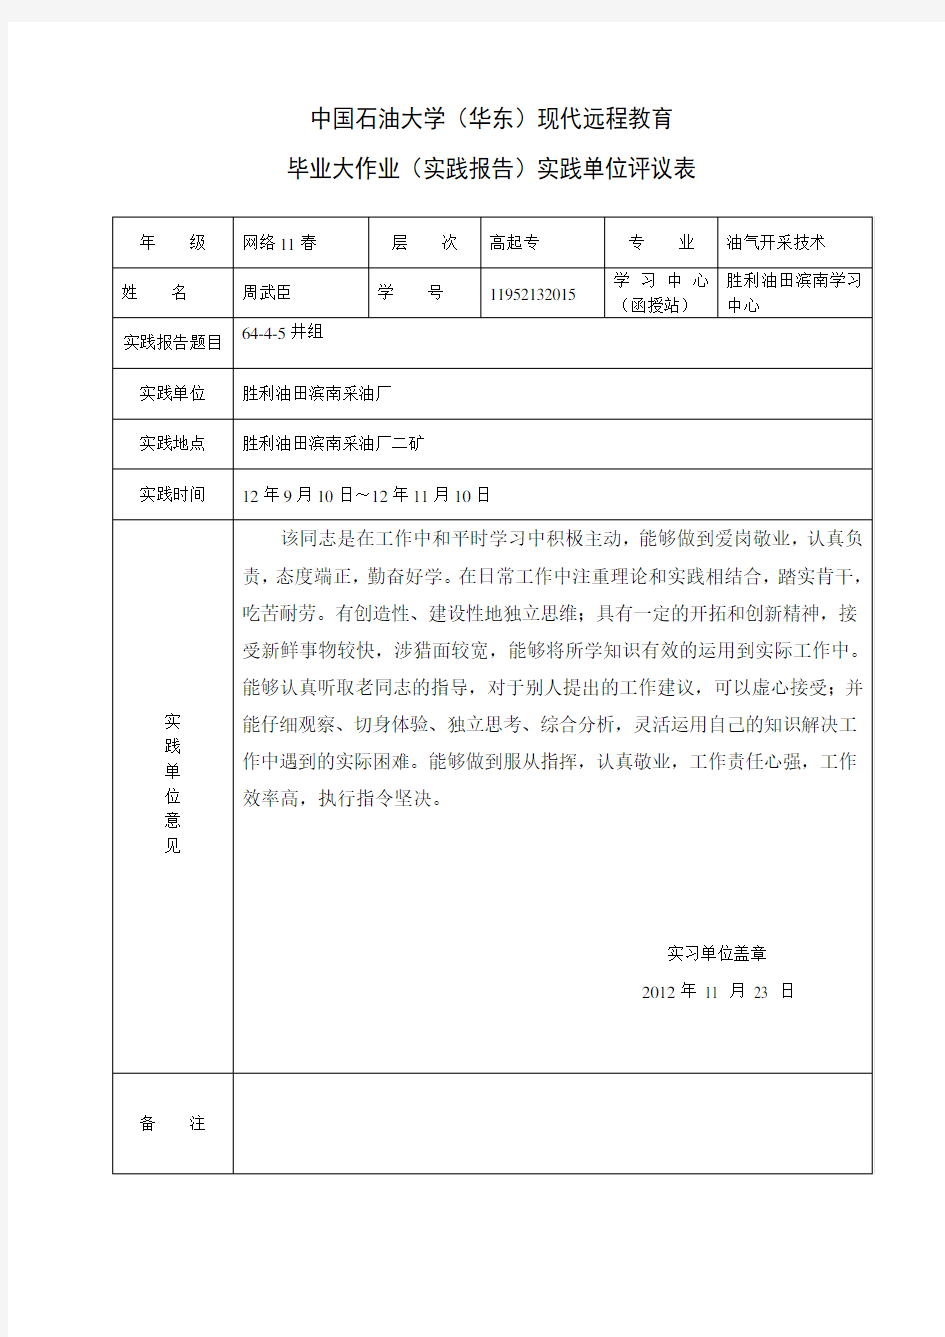 中国石油大学(华东)现代远程教育 毕业大作业(实践报告)